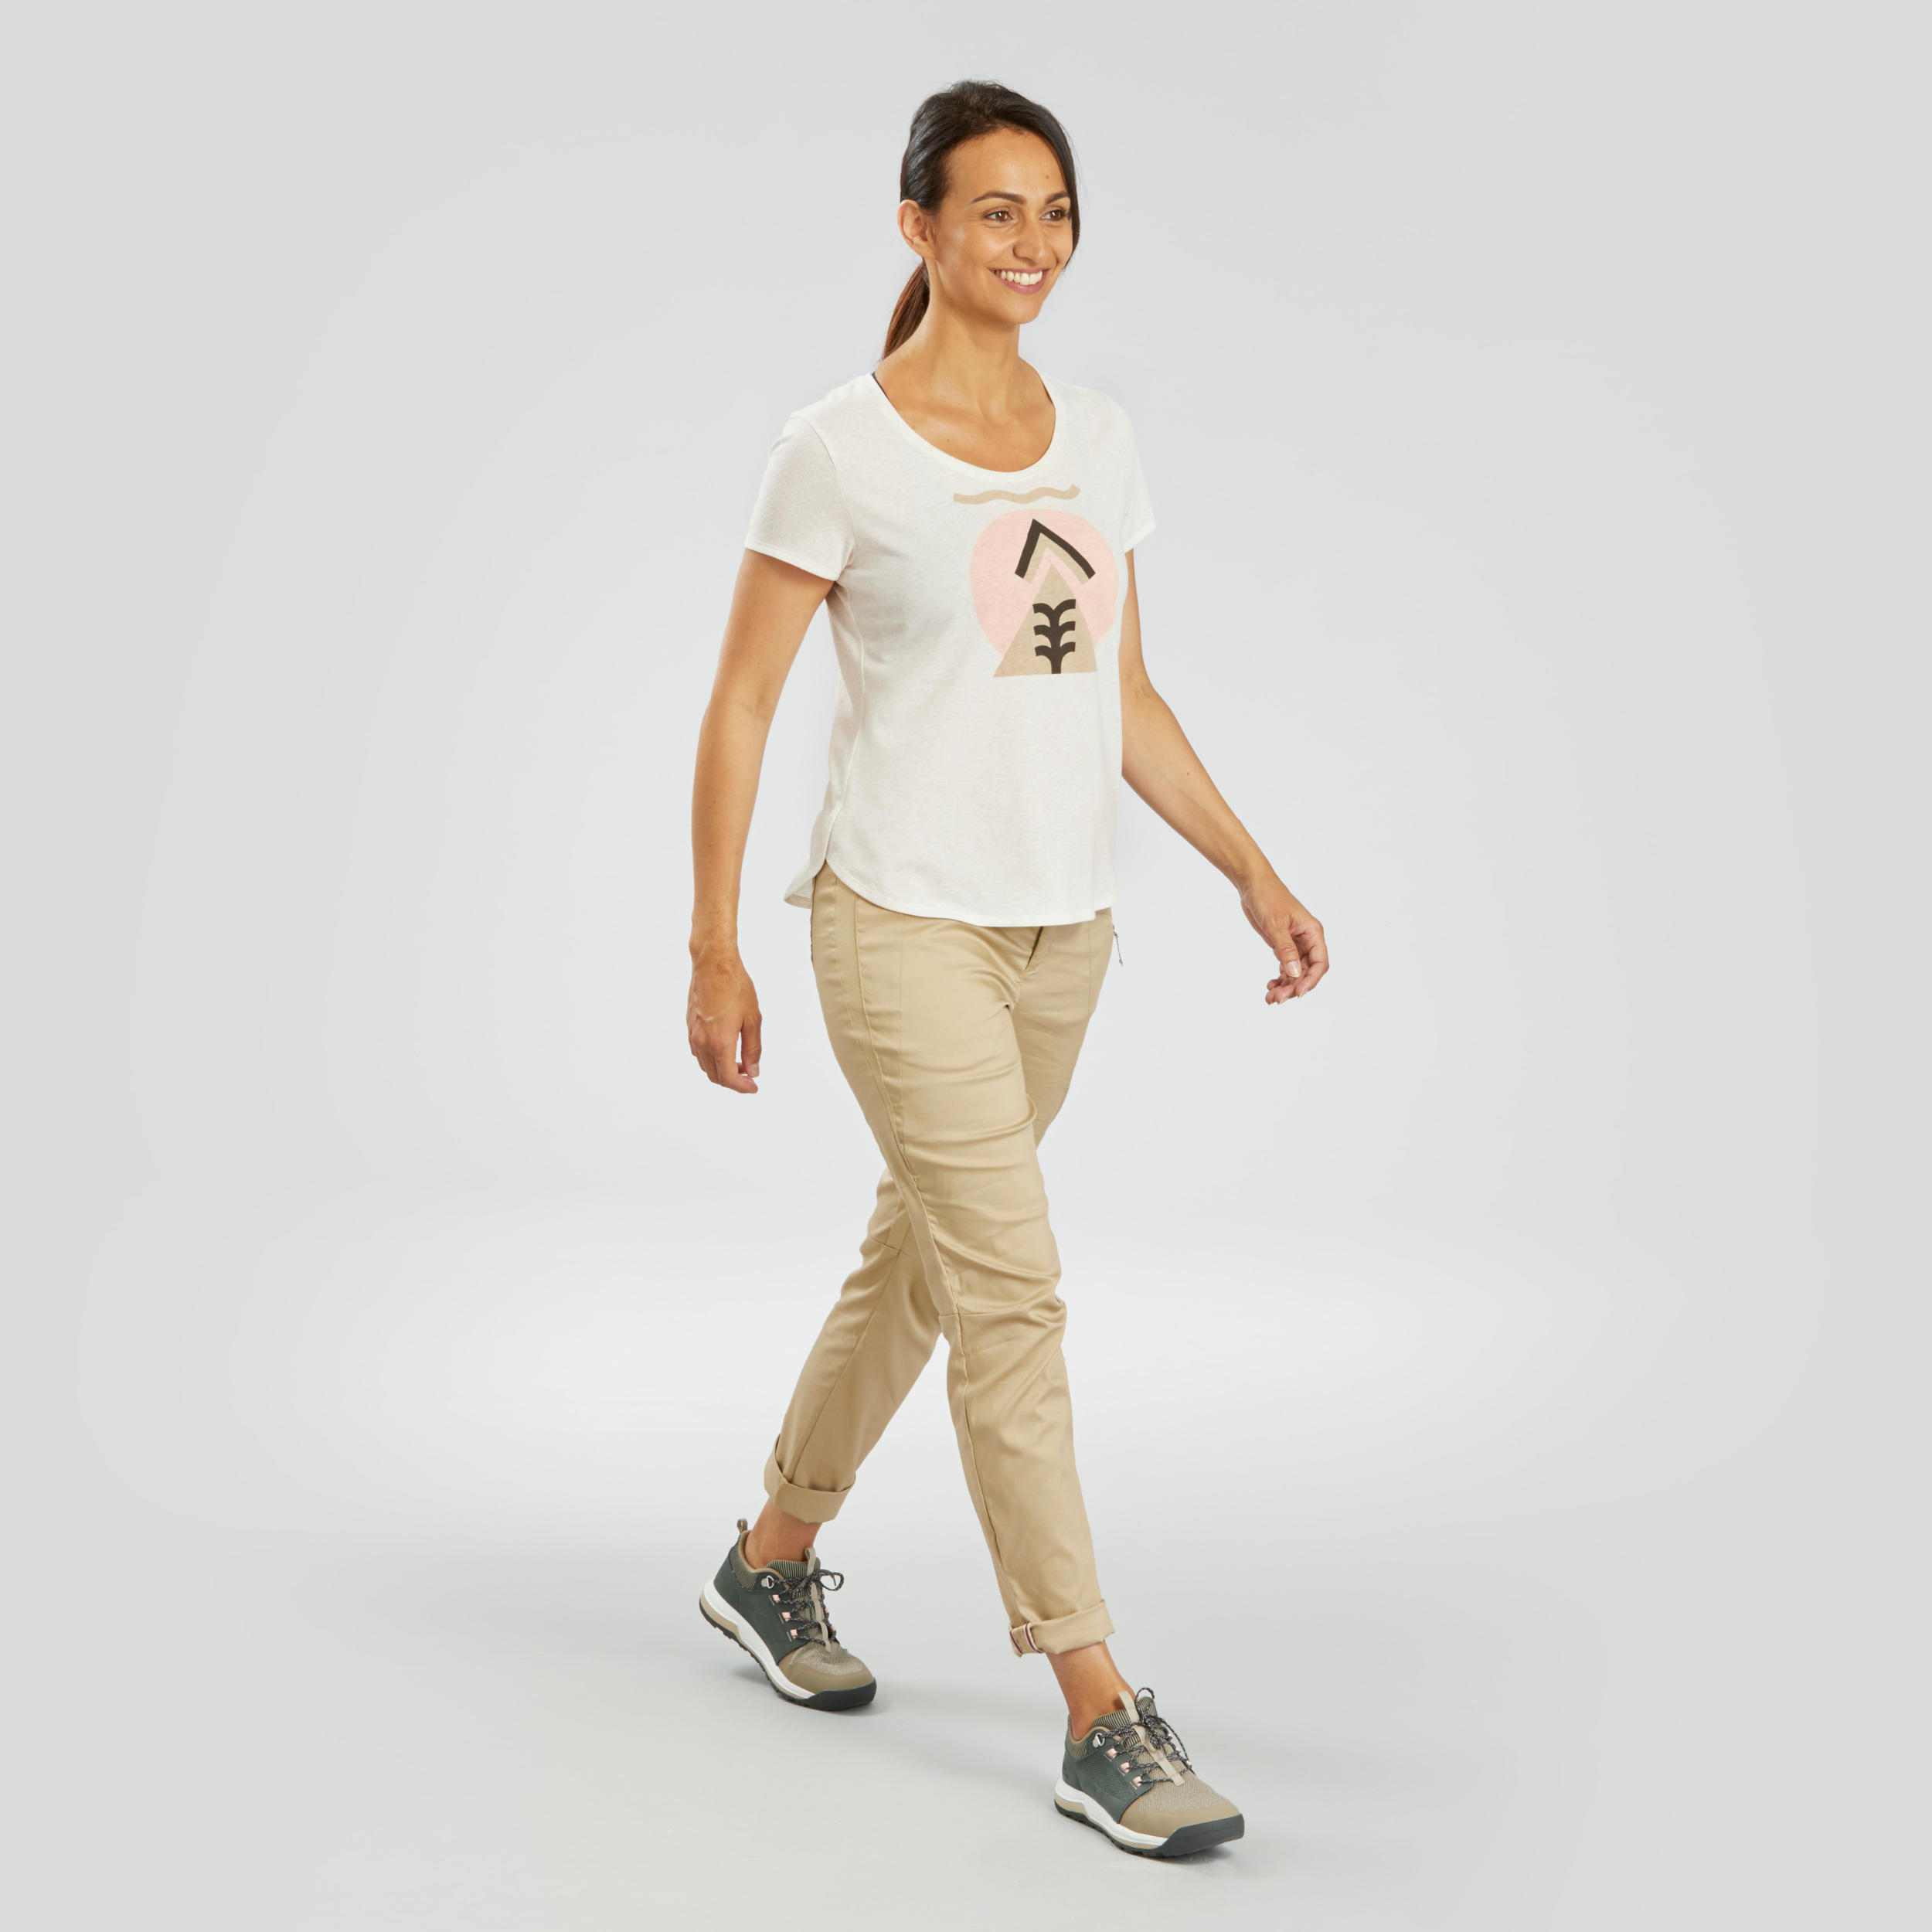 QUECHUA Women's Hiking T-shirt - NH500